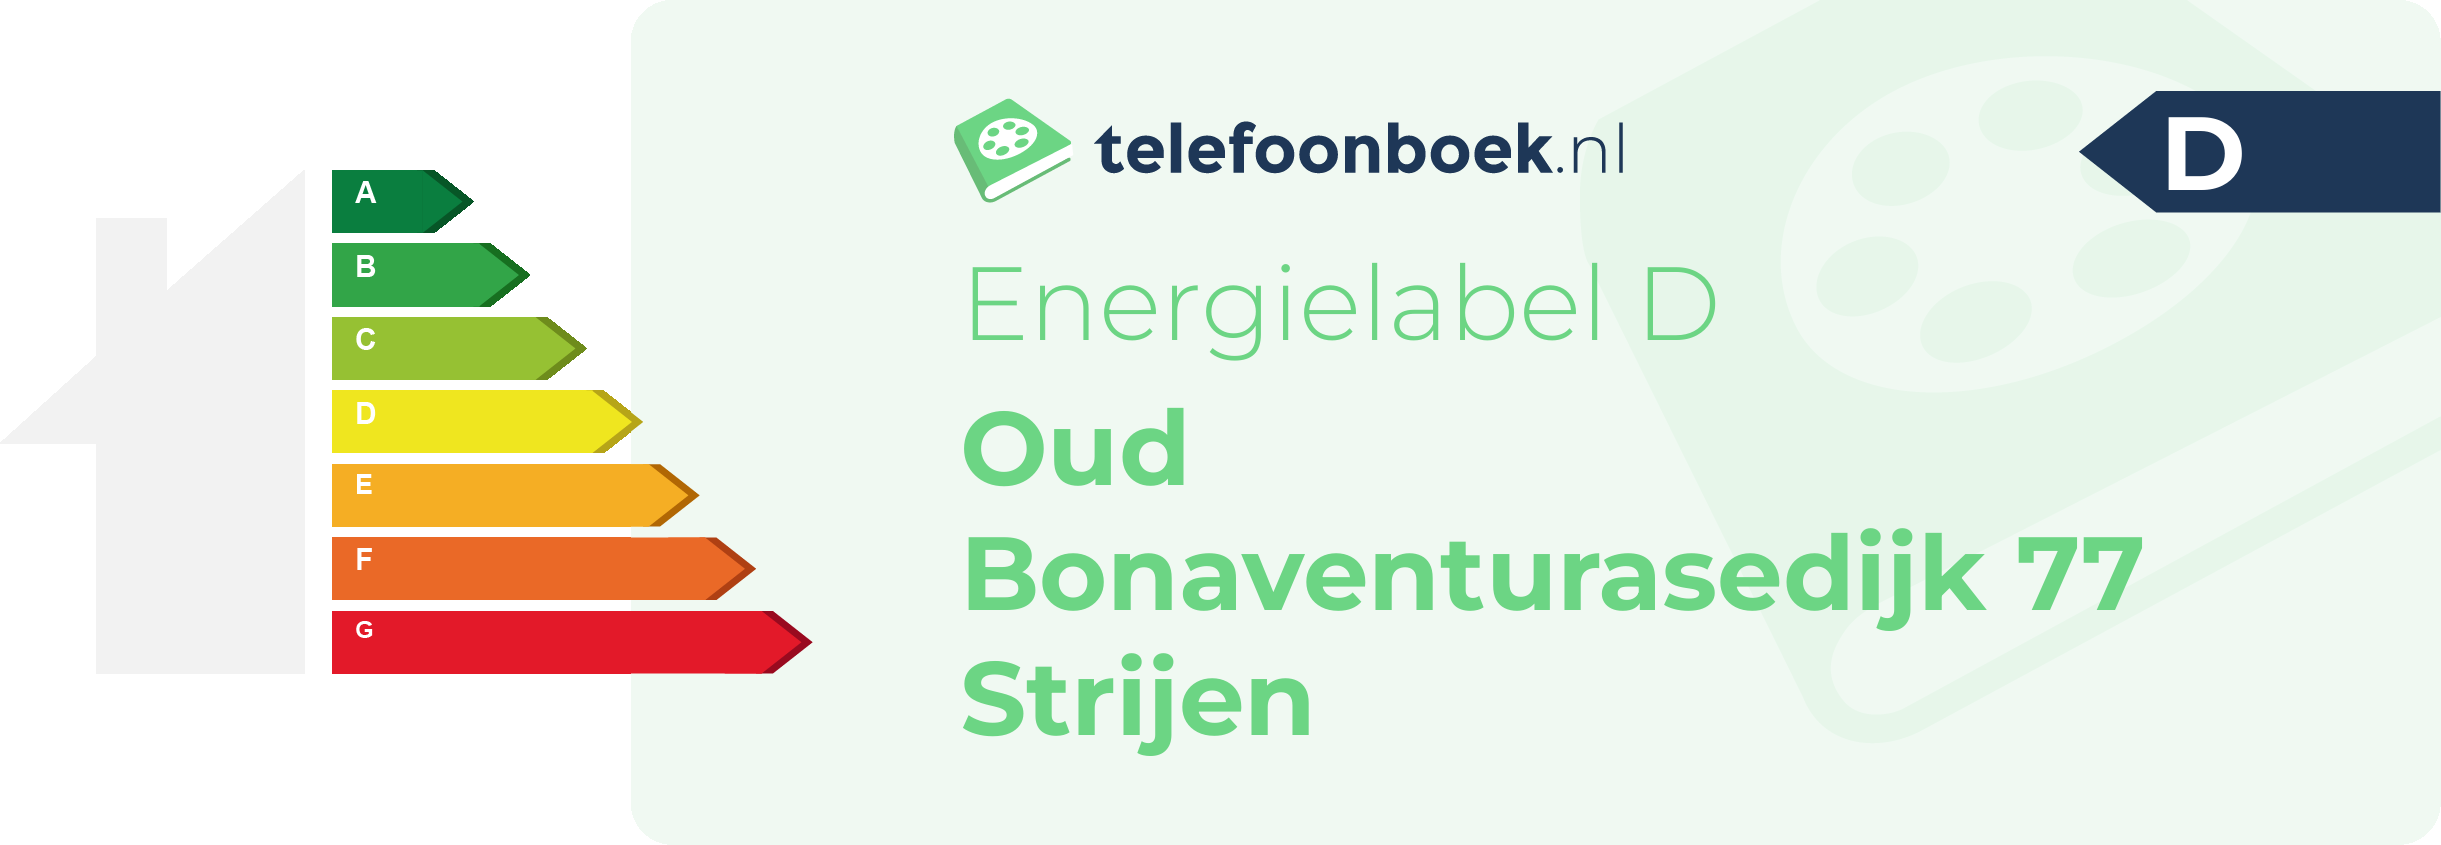 Energielabel Oud Bonaventurasedijk 77 Strijen